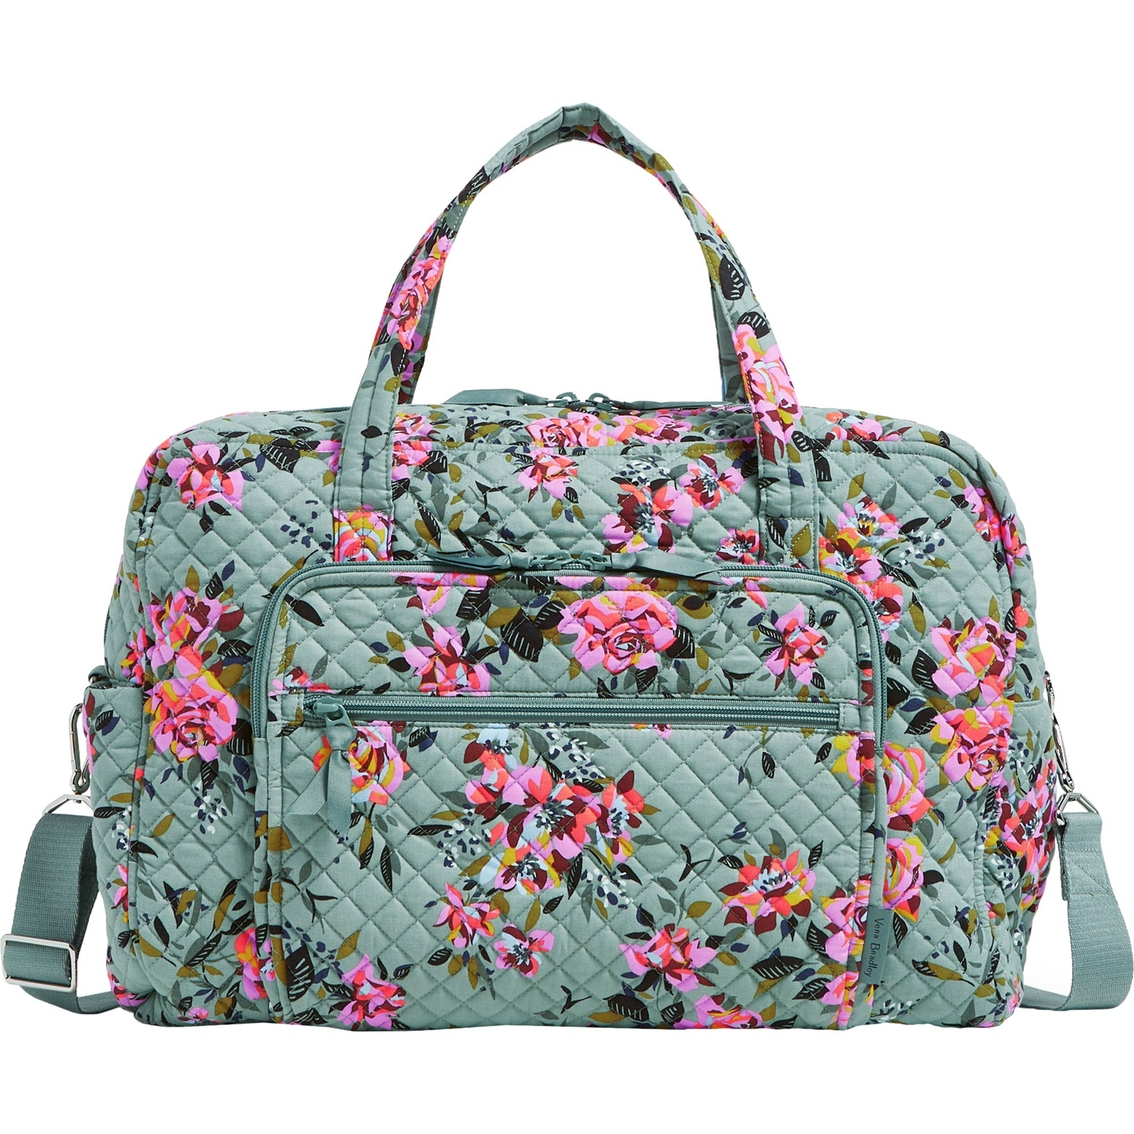 Vera Bradley Rosy Outlook Weekender Travel Bag | Luggage | Clothing ...